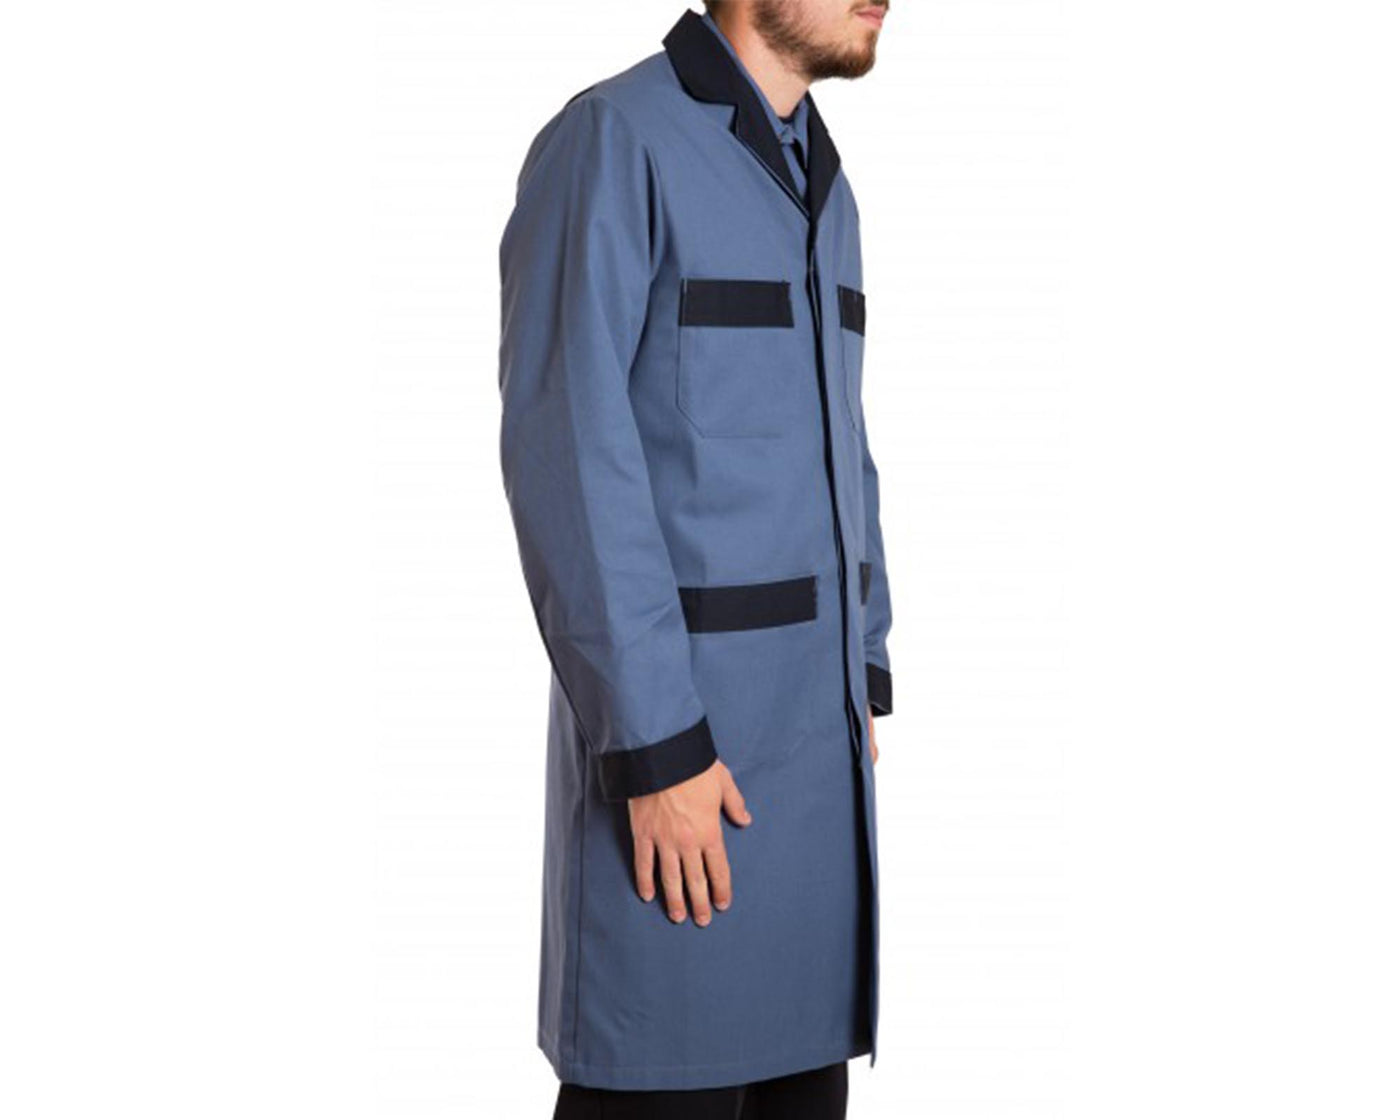 Industrial Shop coat with navy trim